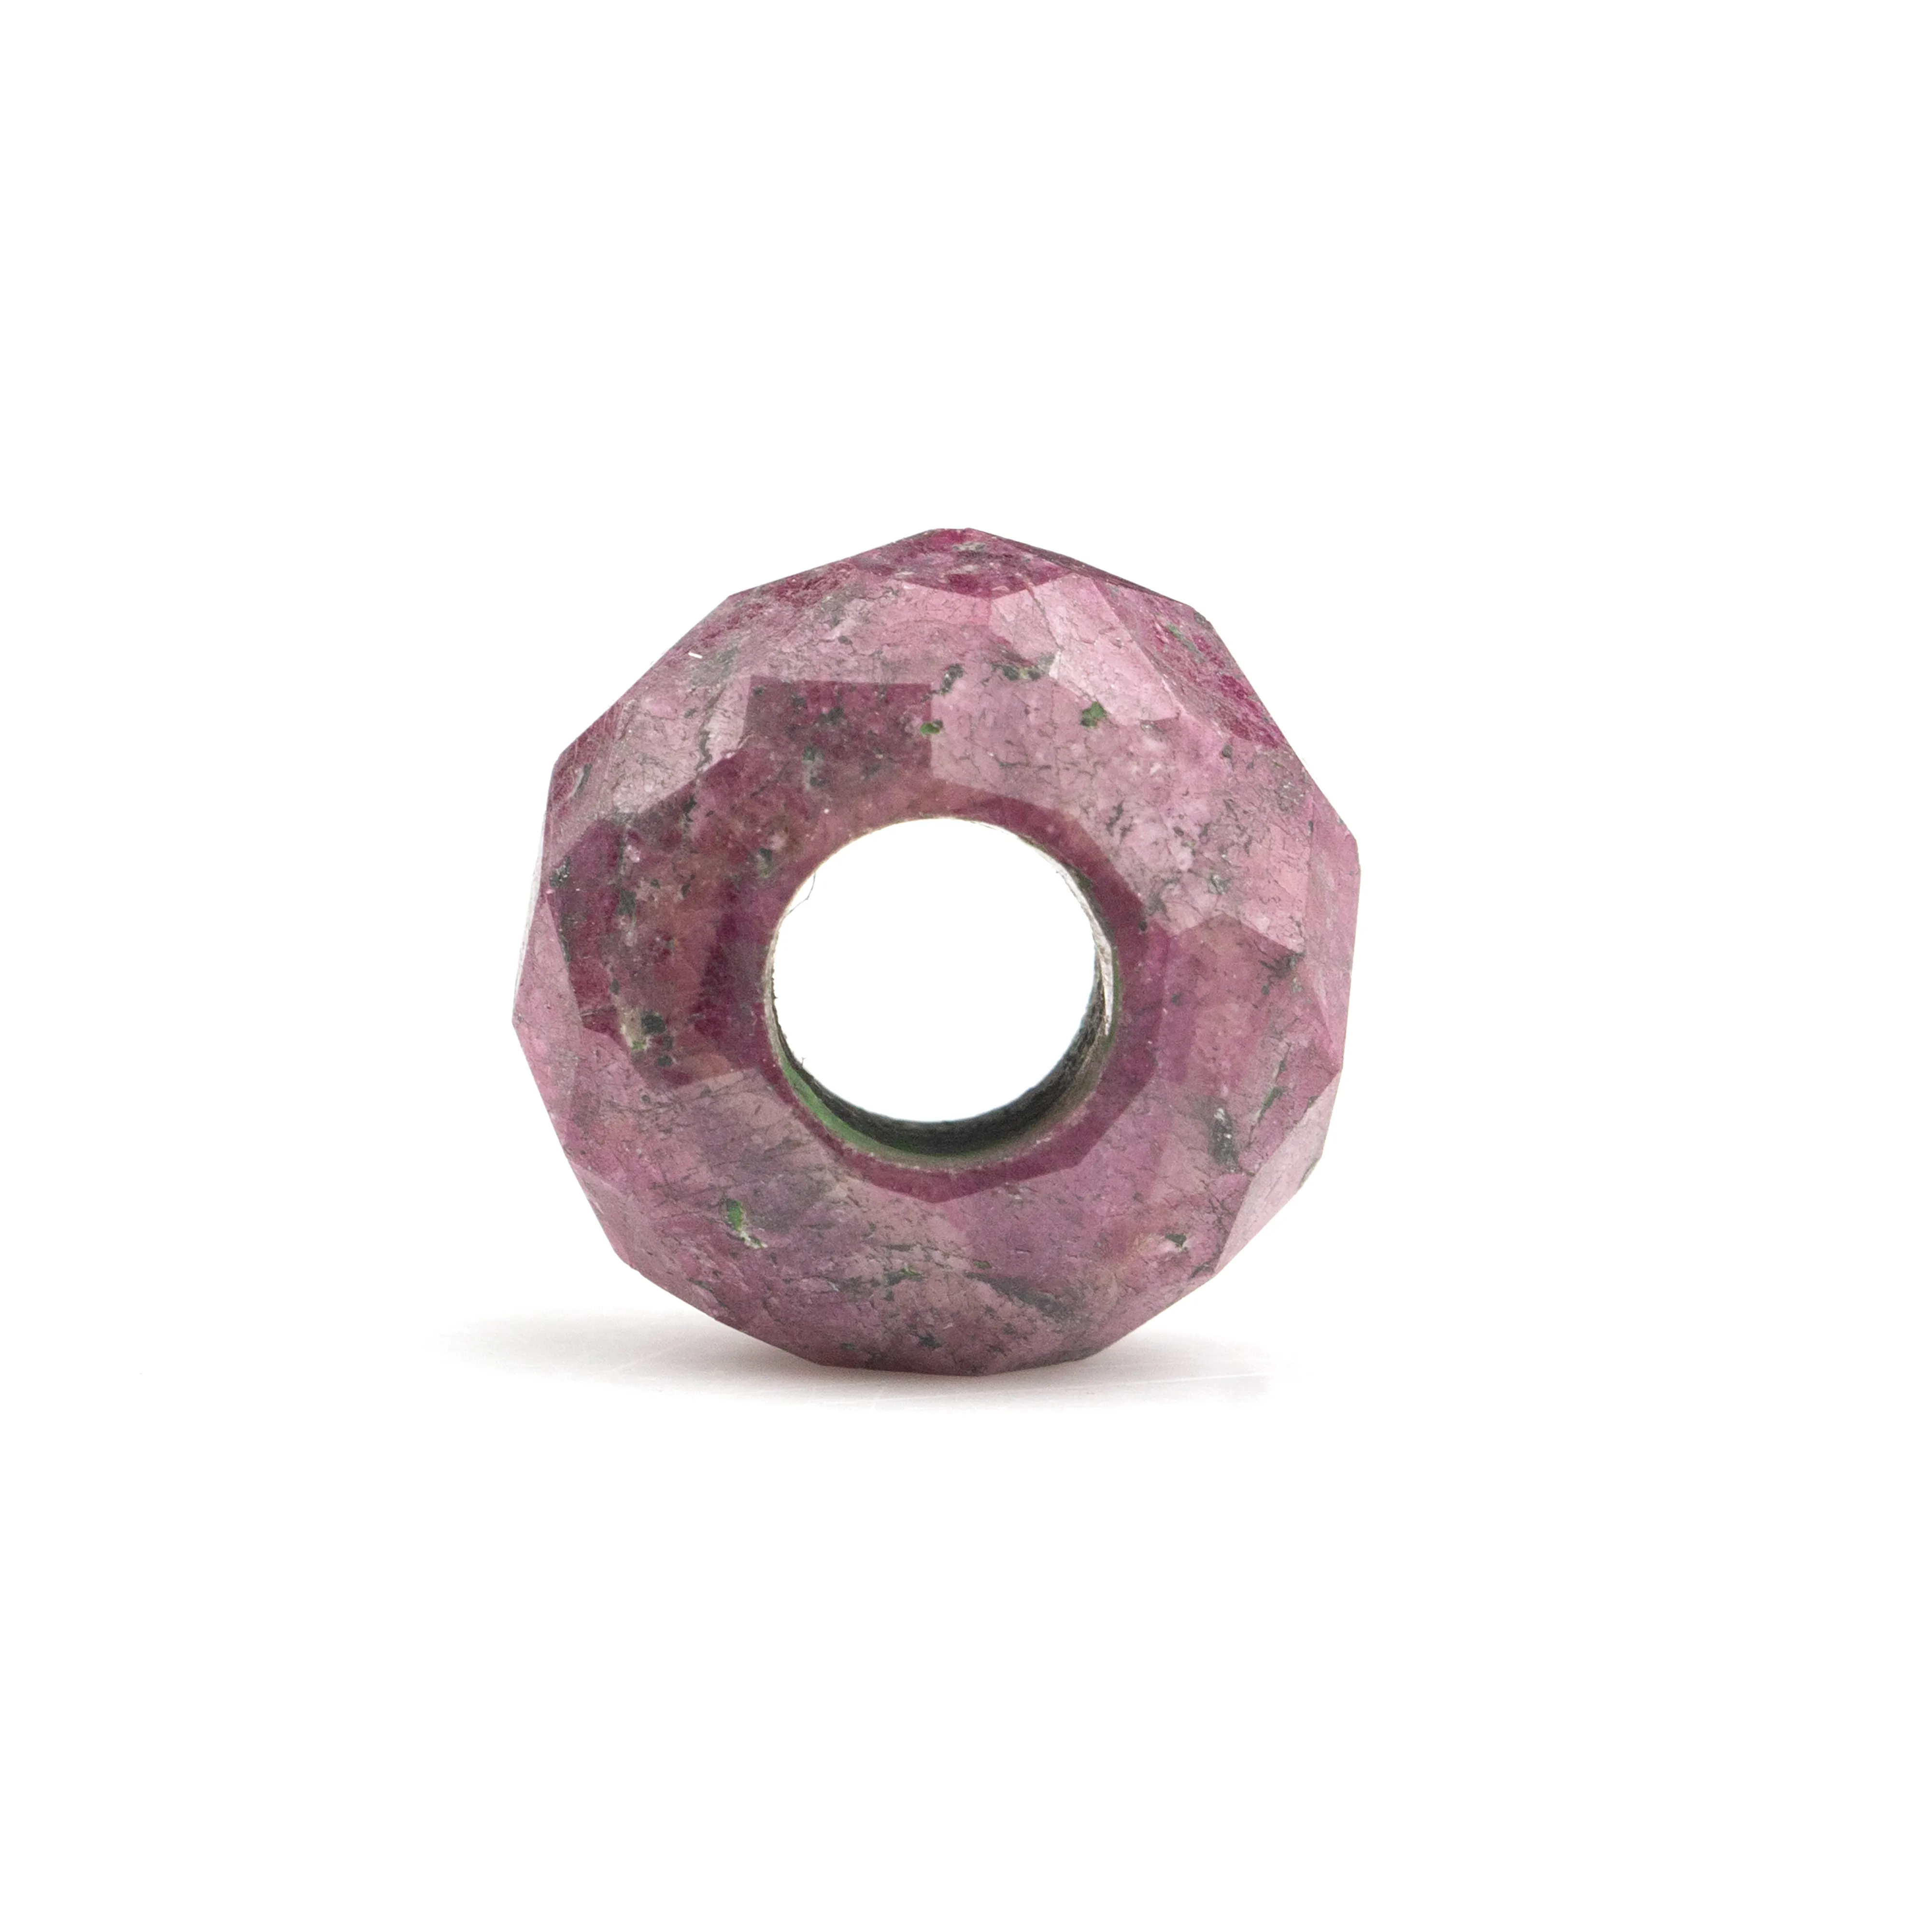 14x8mm alami dipoles alami India merah muda Ruby bentuk Rondelle halus lubang besar ukuran batu permata manik-manik untuk membuat perhiasan